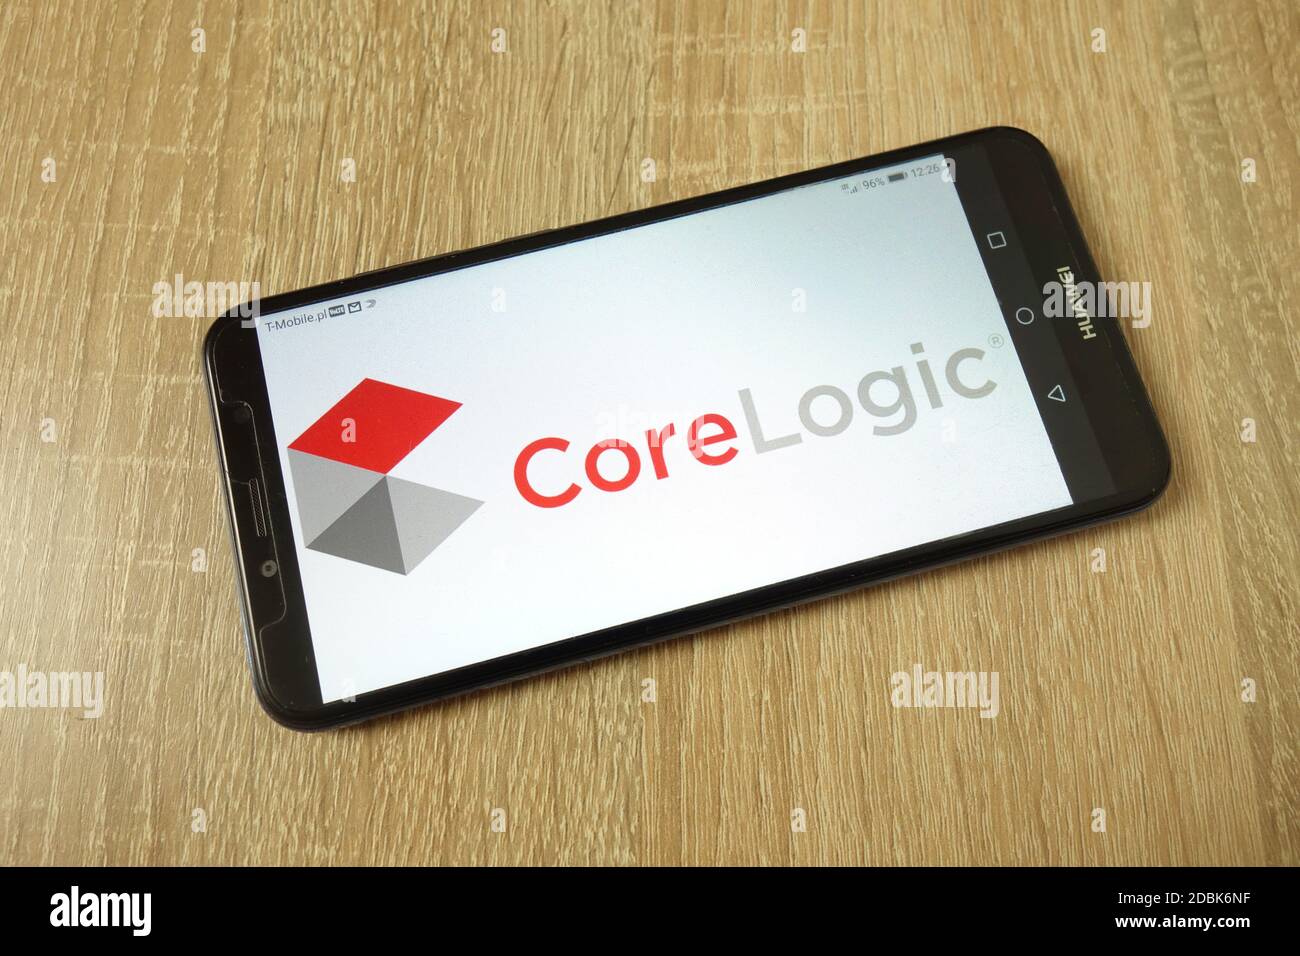 KONSKIE, POLONIA - 21 giugno 2019: Logo aziendale di CoreLogic Inc visualizzato sul telefono cellulare Foto Stock